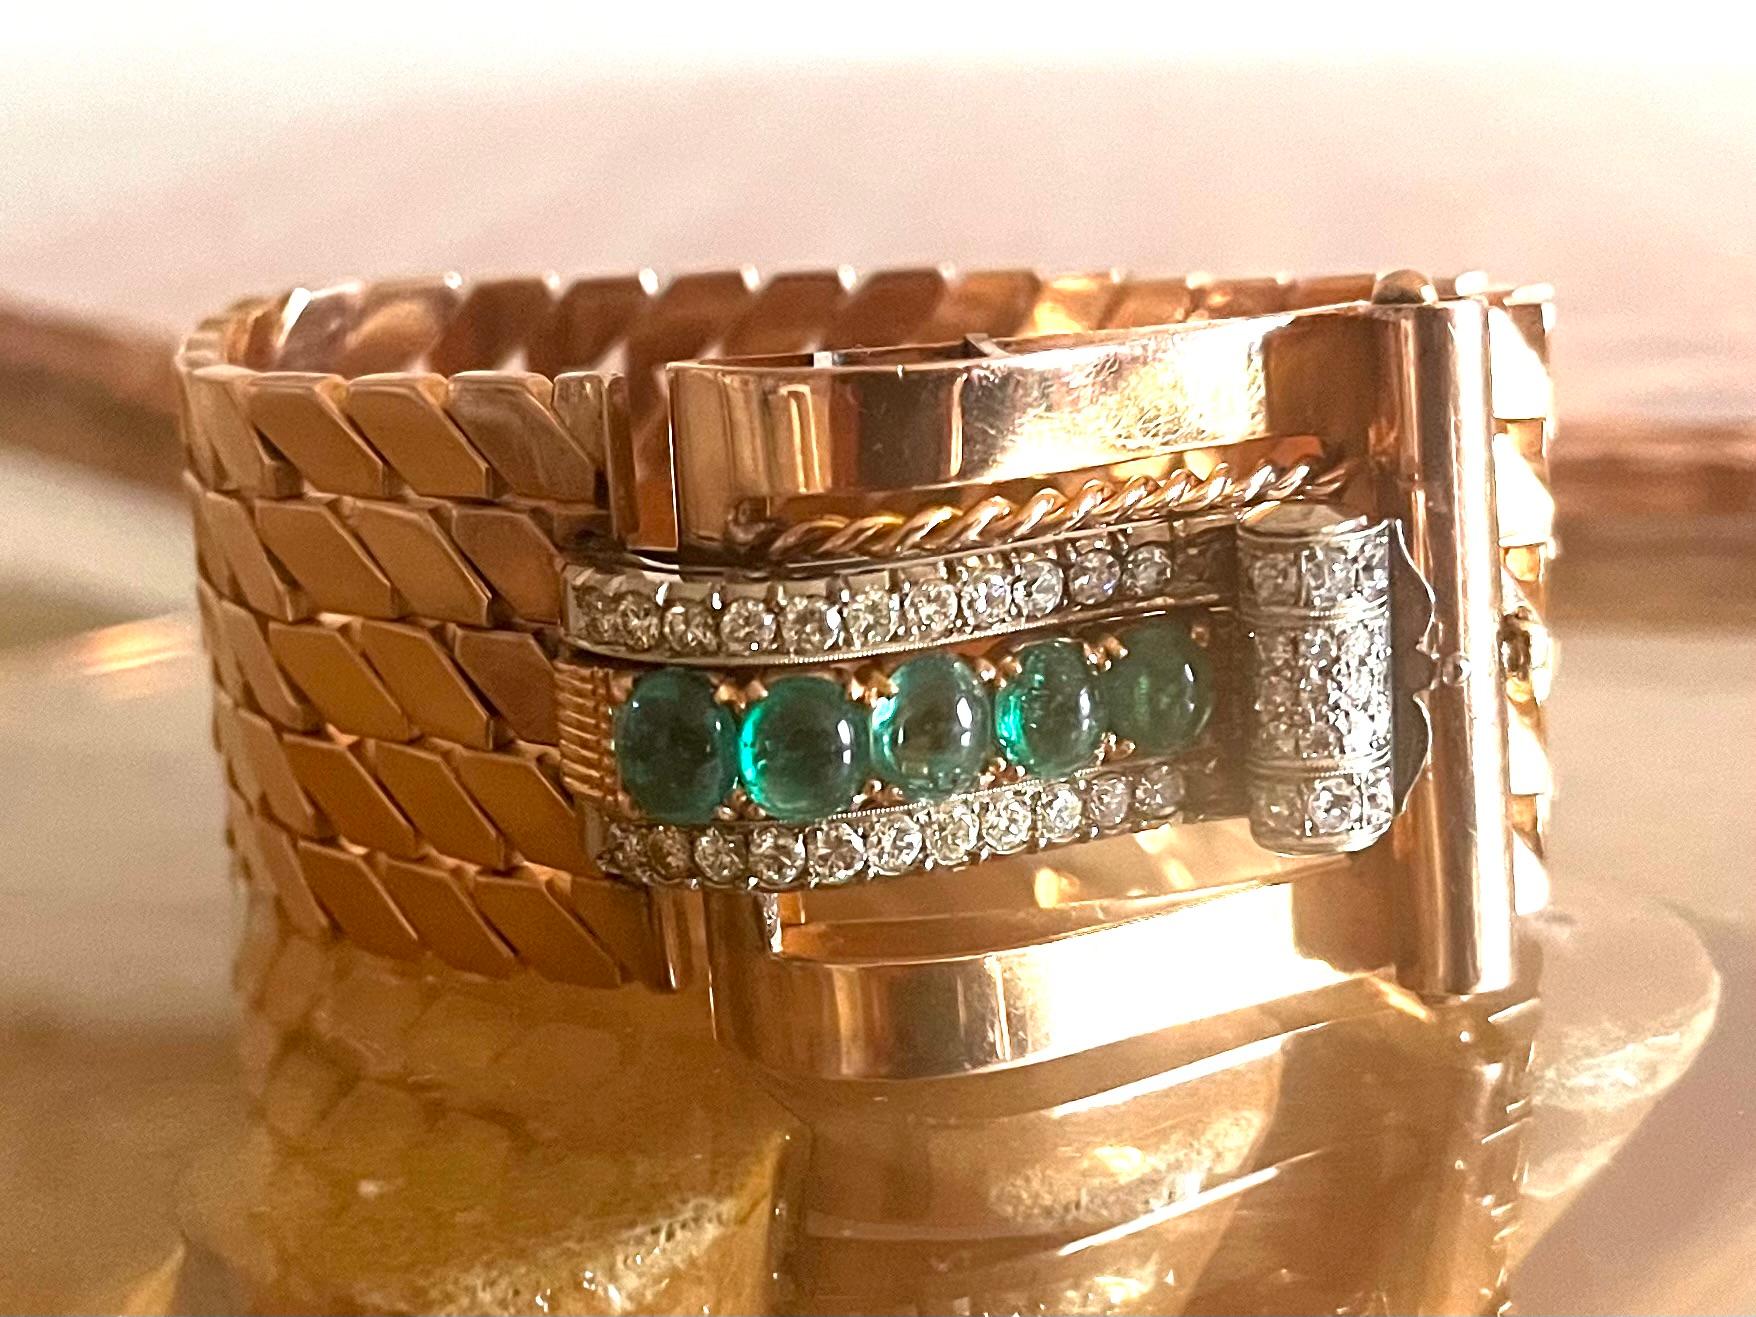 Ce sublime bracelet Tank Retro en or rose 18 carats présente un motif géométrique orné de 5 cabochons d'émeraudes encadrés par deux lignes de diamants ronds et un fermoir fait d'un tourbillon de diamants. Œuvre des années 40.

En raison du début de